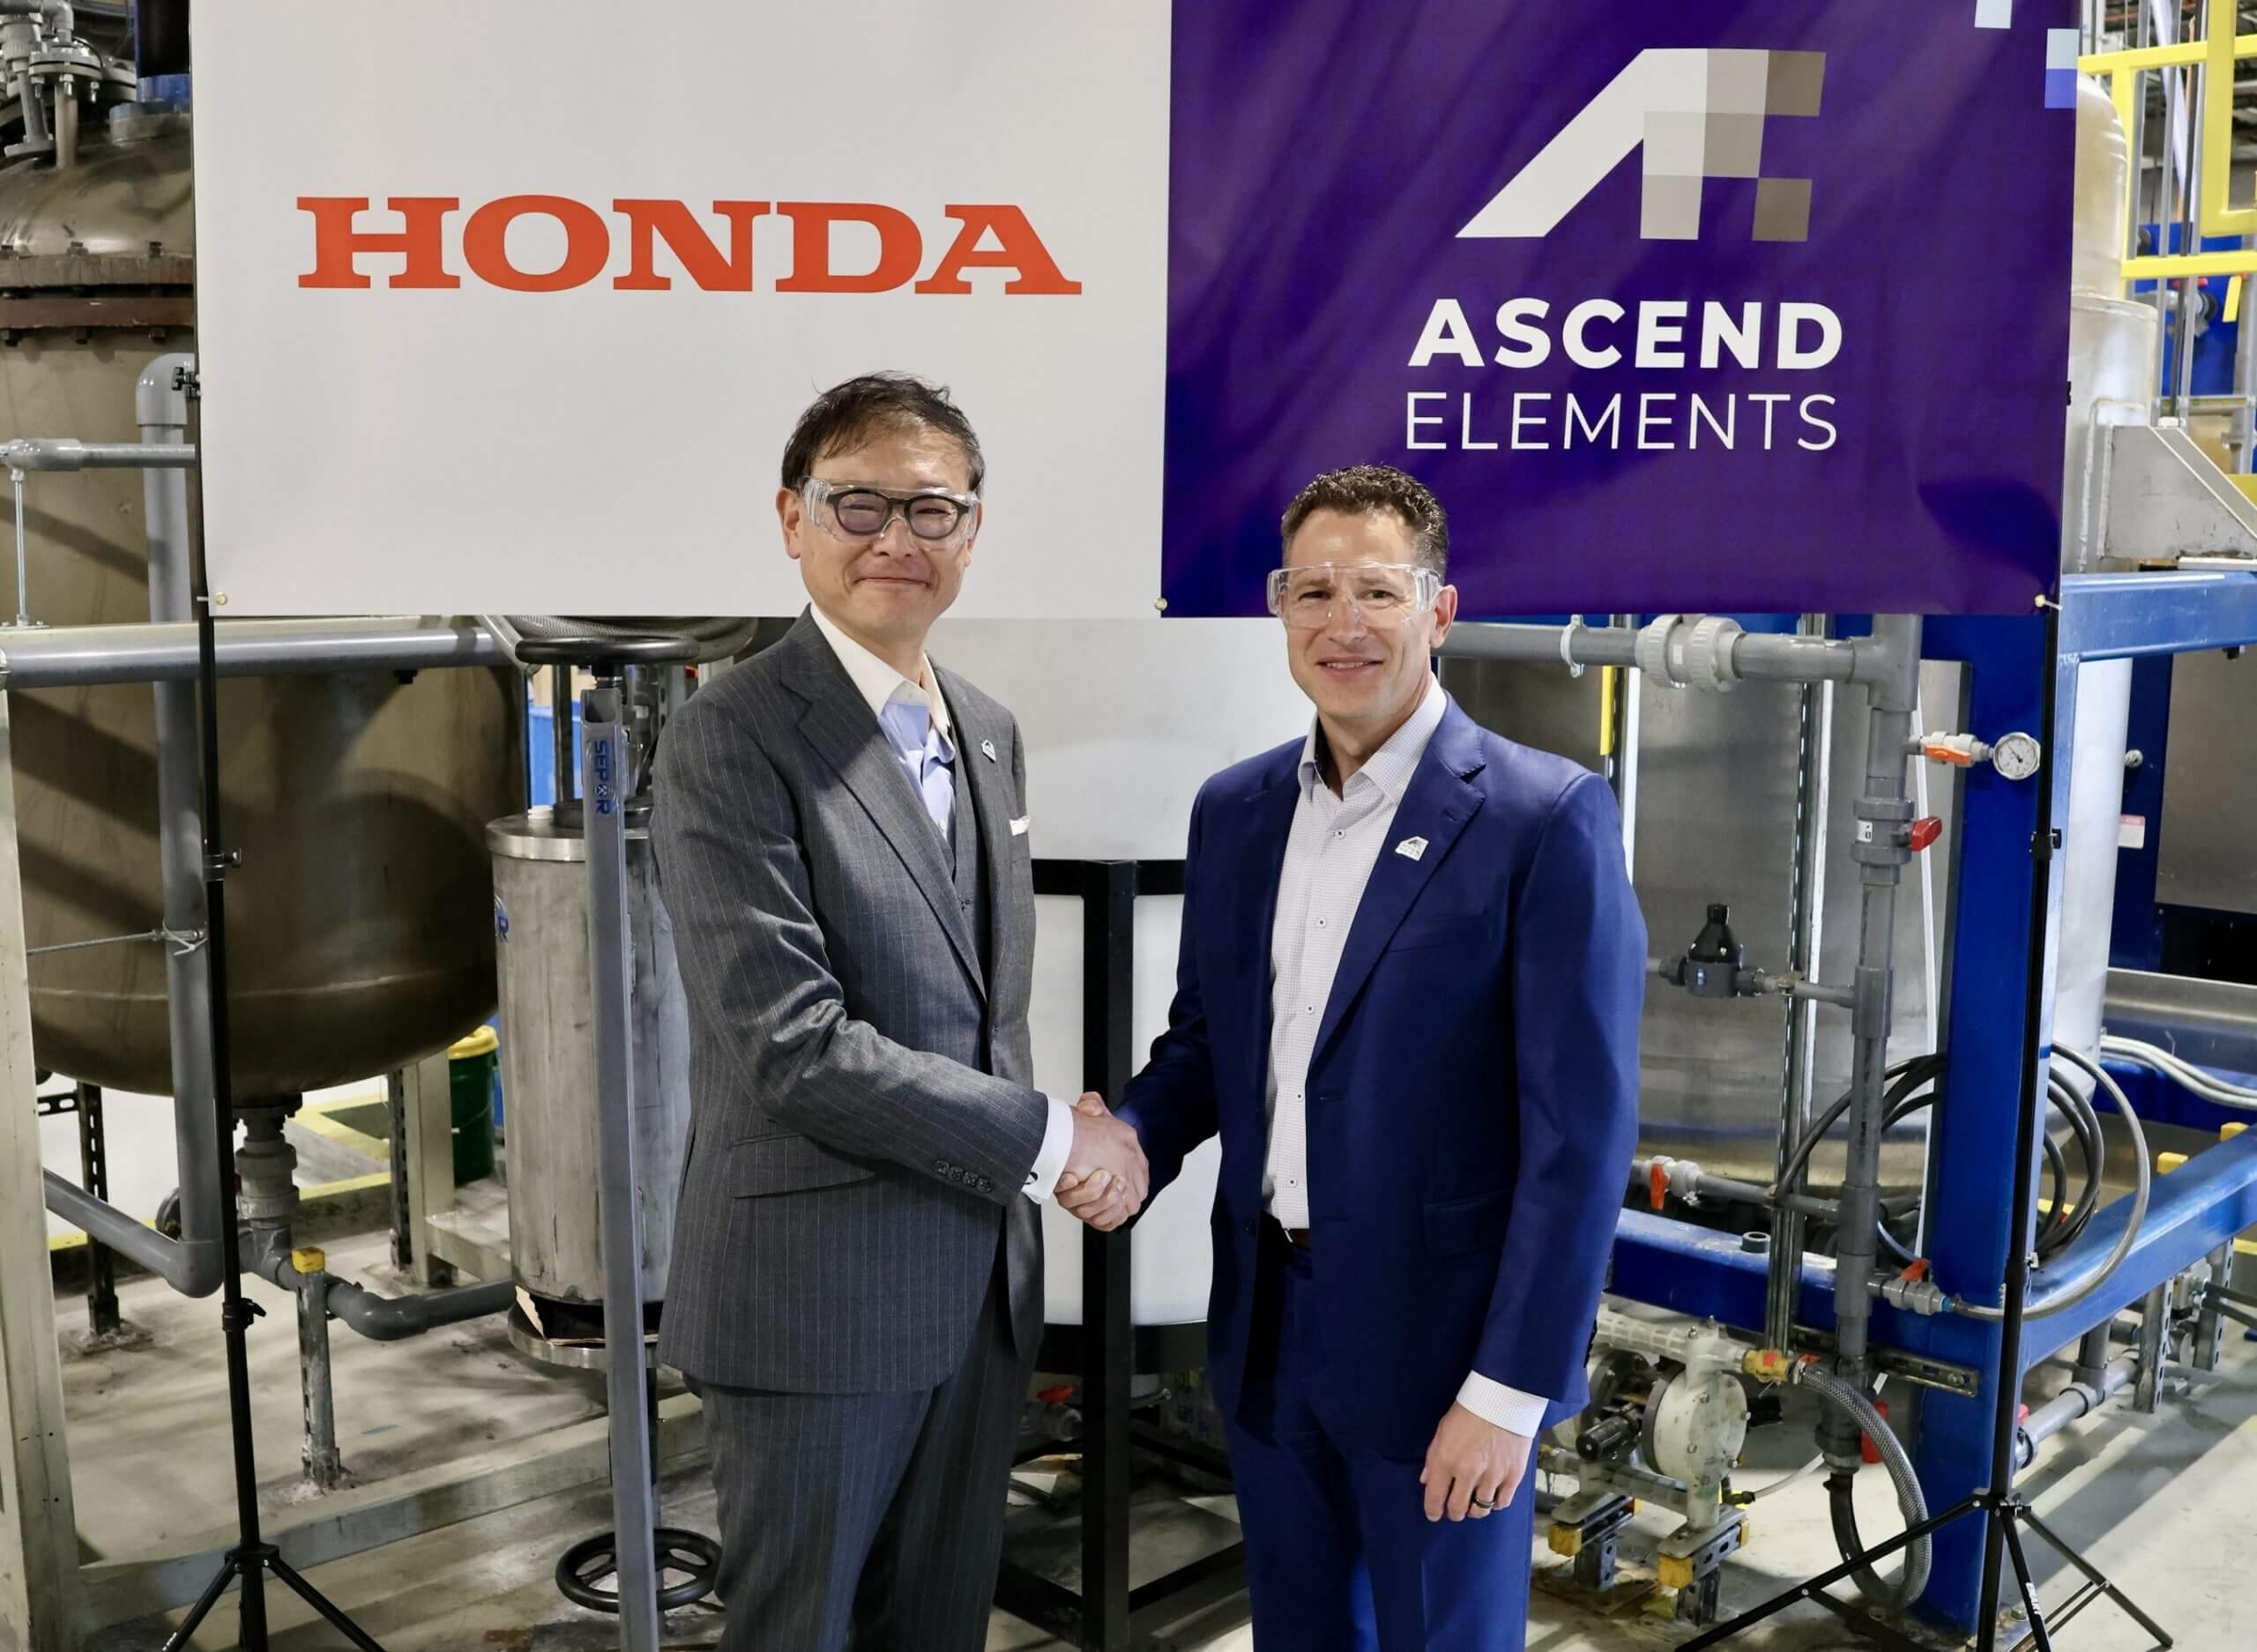 La produzione di veicoli elettrici Honda inizia a prendere forma con un nuovo accordo sulle batterie